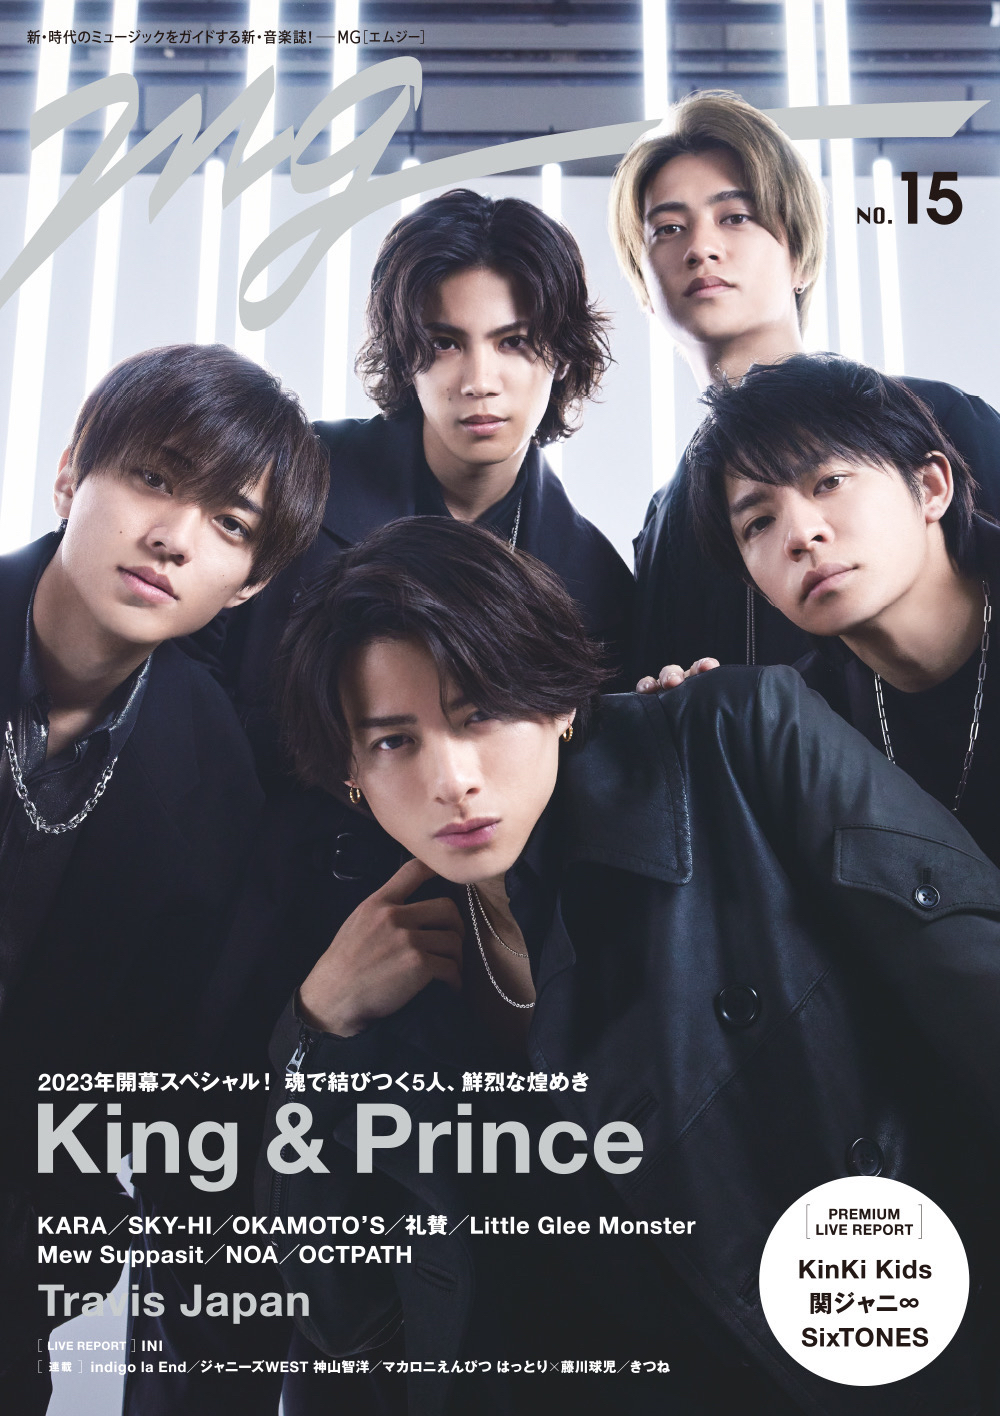 異例の発売前重版となったKing & Prince表紙「MG」第15号が本日発売